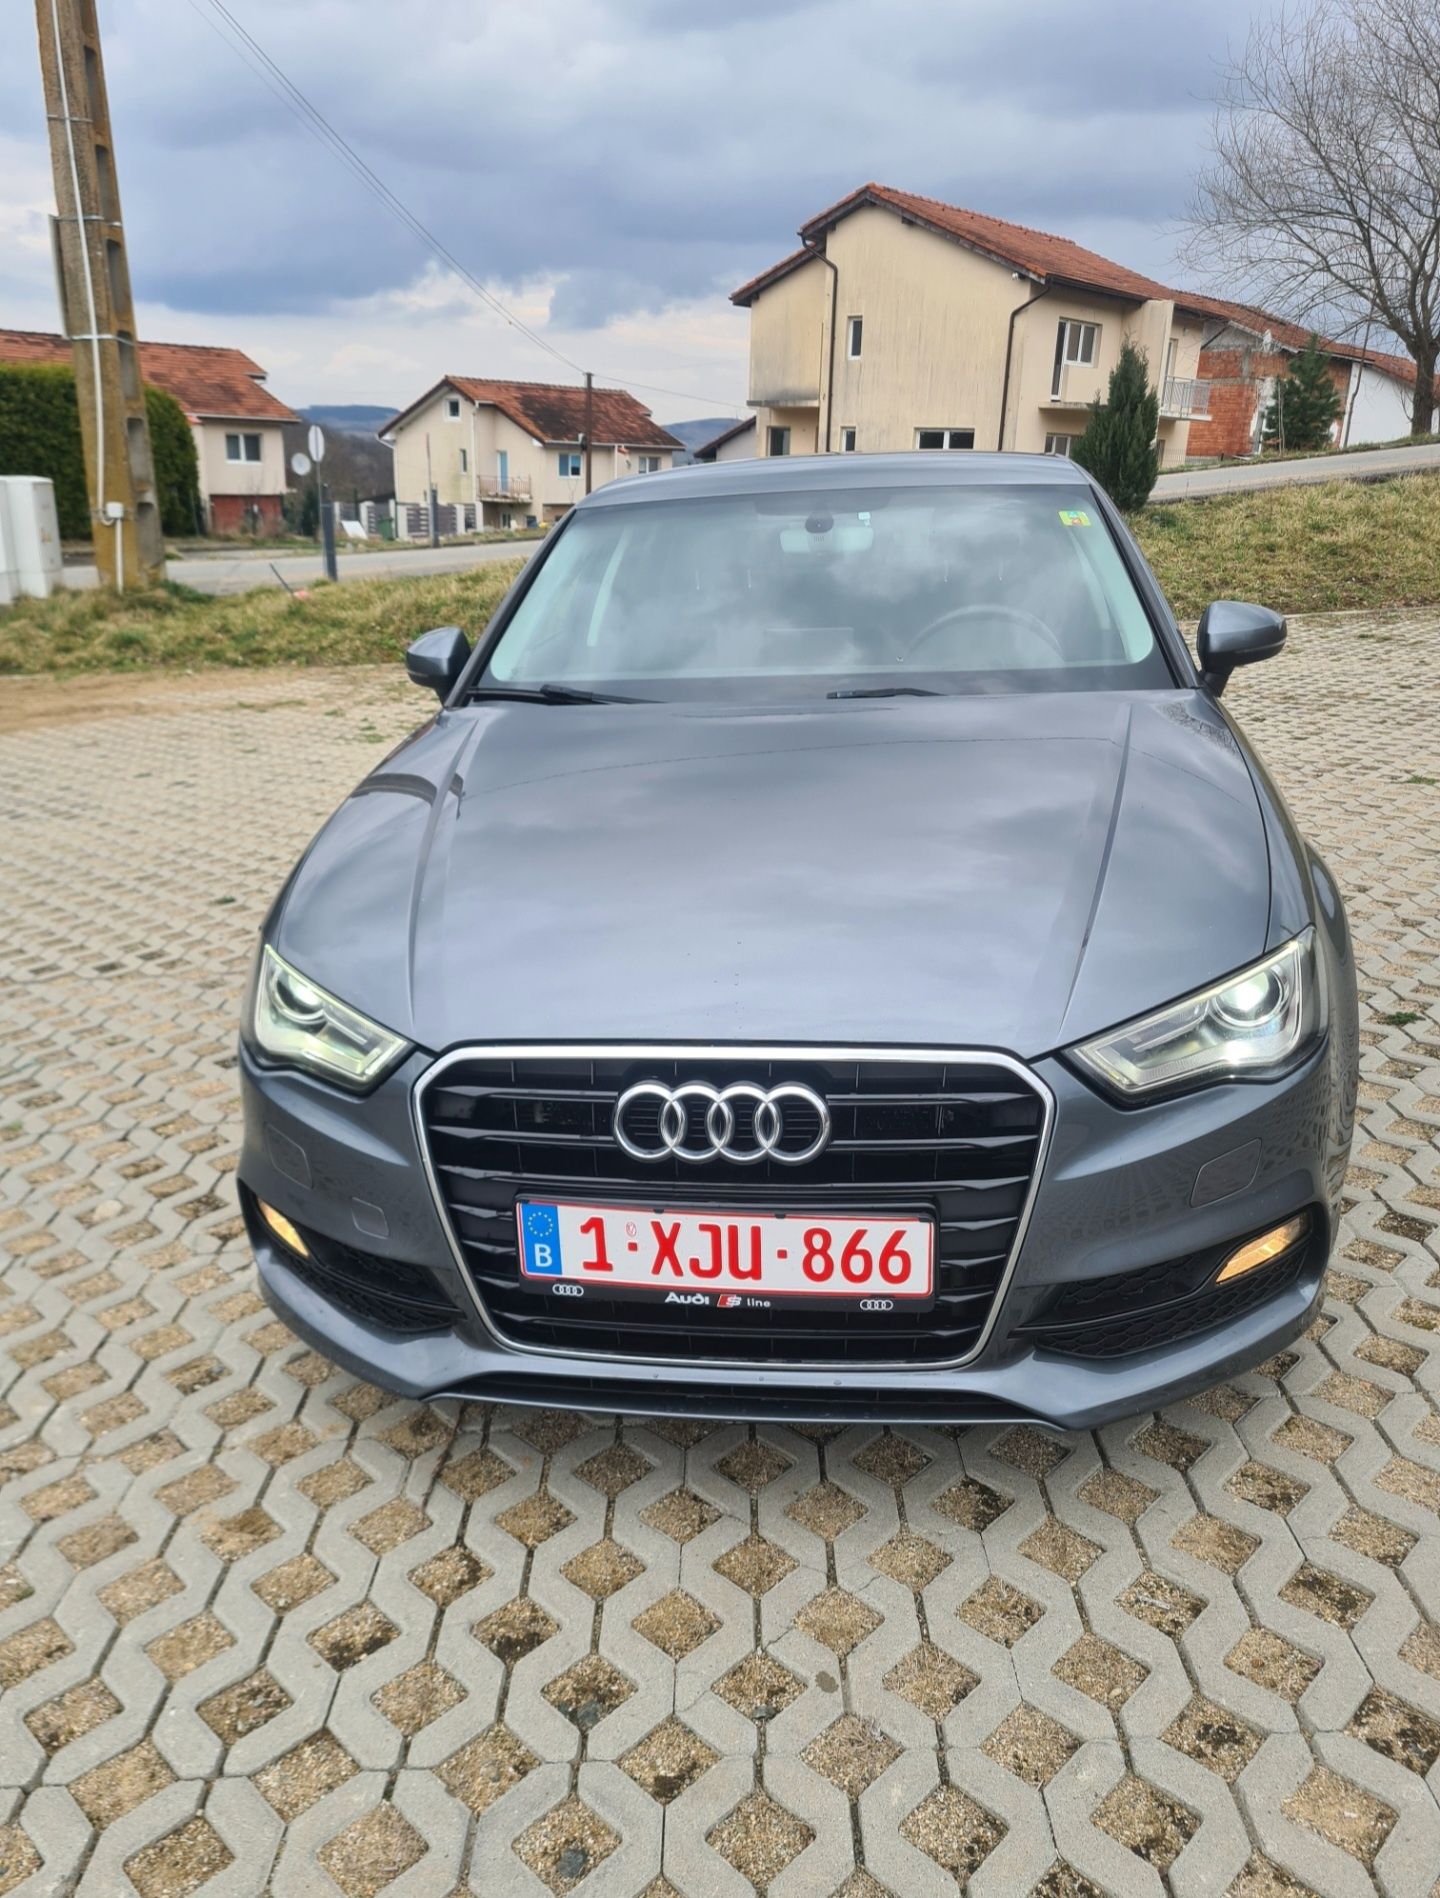 Vând Audi A3 2016 S-line, EURO 6 fără AdBlue varianta berlină